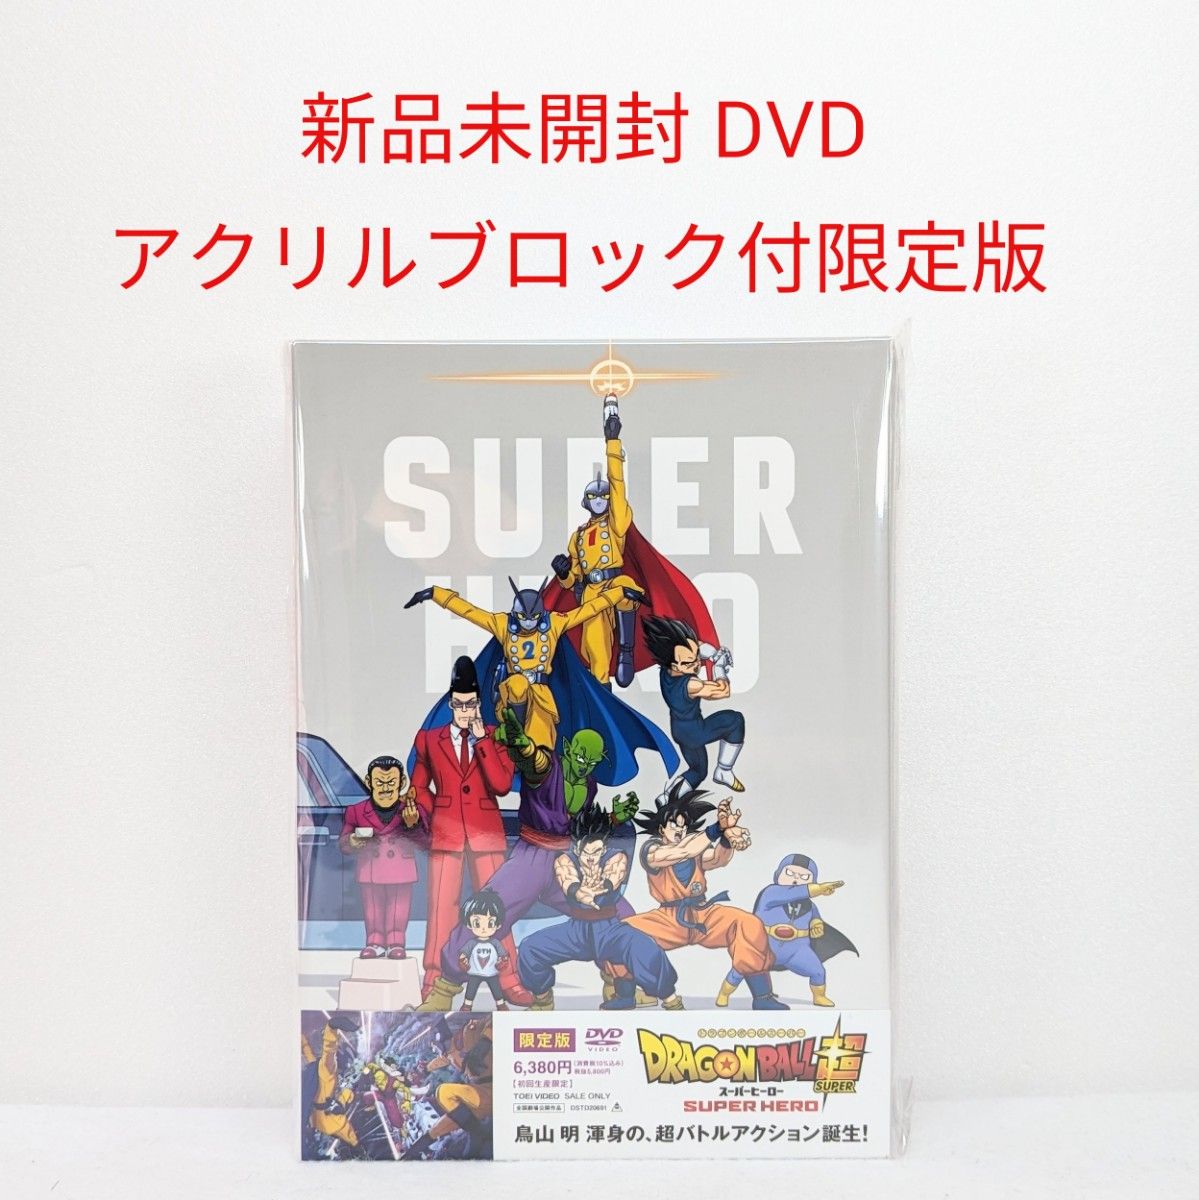 【新品未開封】 ドラゴンボール超 スーパーヒーロー DVD限定版 (アクリルブロック付初回生産限定版)